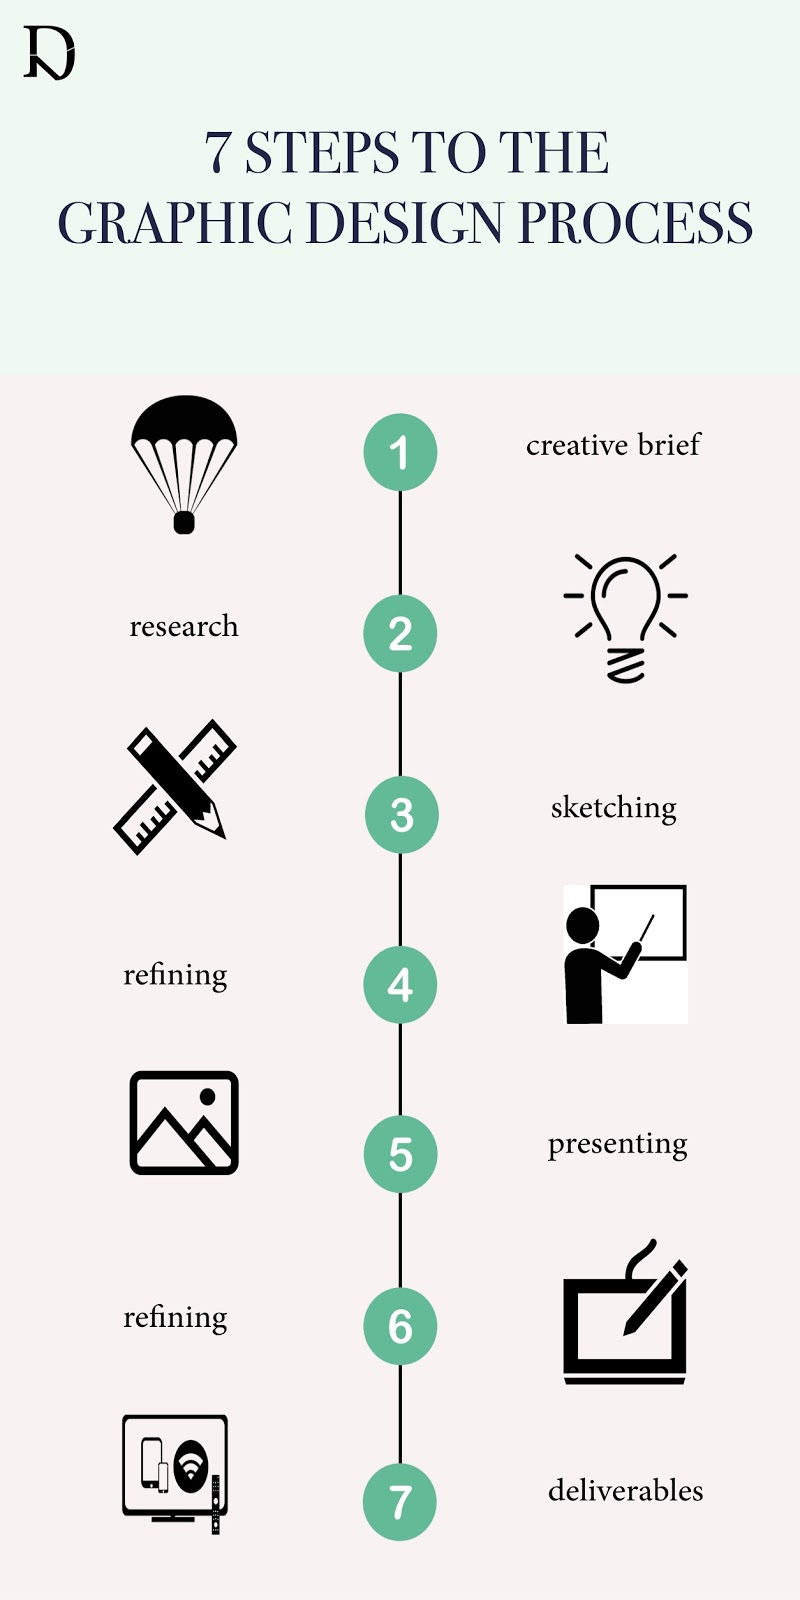 5 Step Graphic Design Process Ferisgraphics - Riset